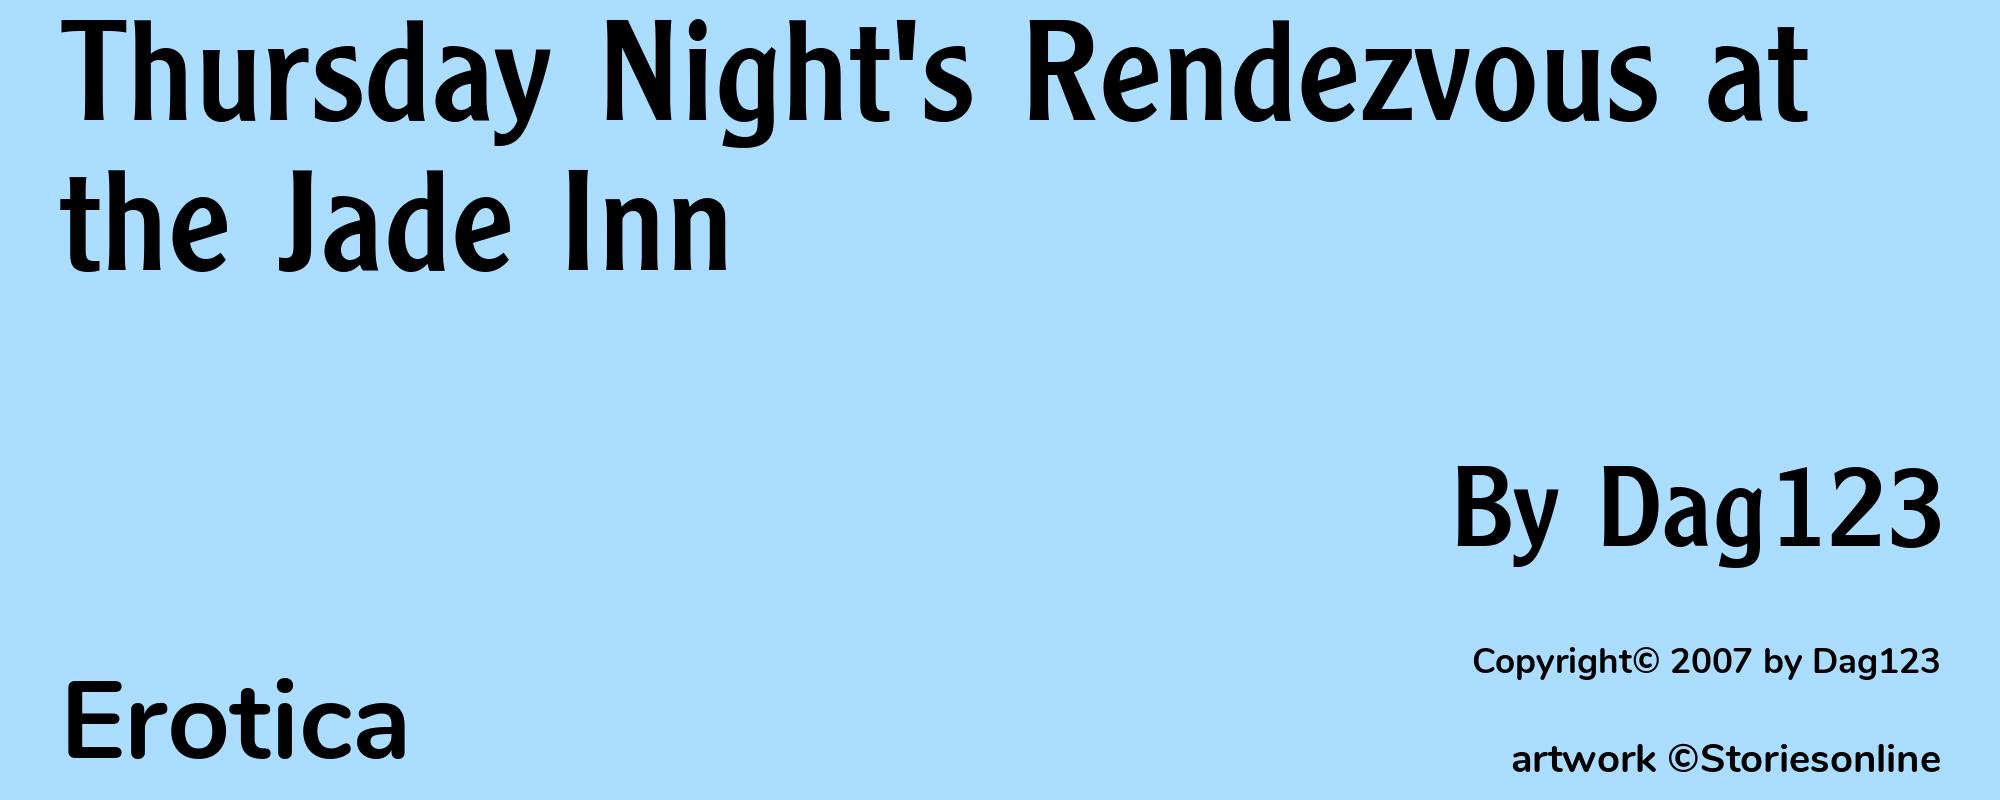 Thursday Night's Rendezvous at the Jade Inn - Cover